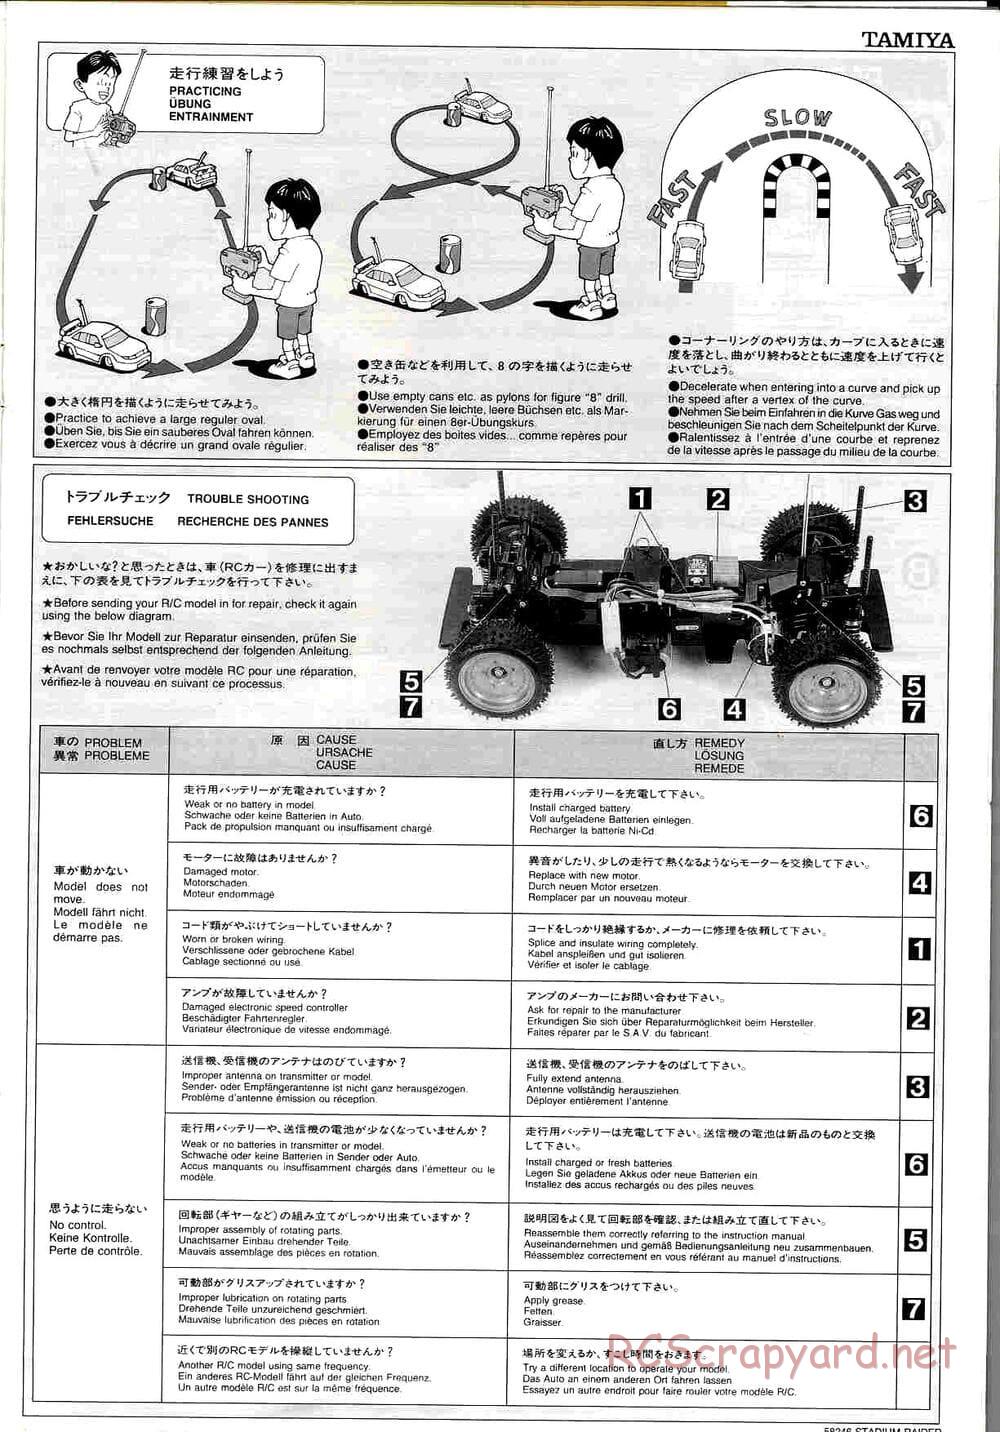 Tamiya - Stadium Raider - TL-01 Chassis - Manual - Page 21